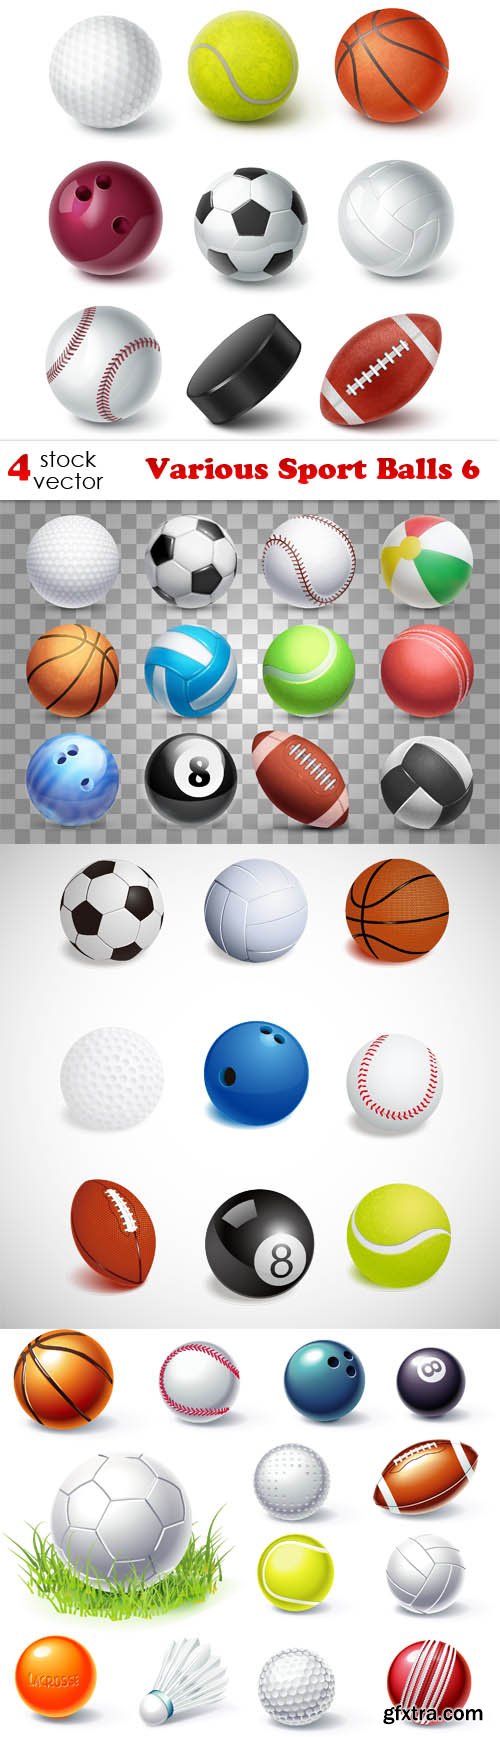 Vectors - Various Sport Balls 6